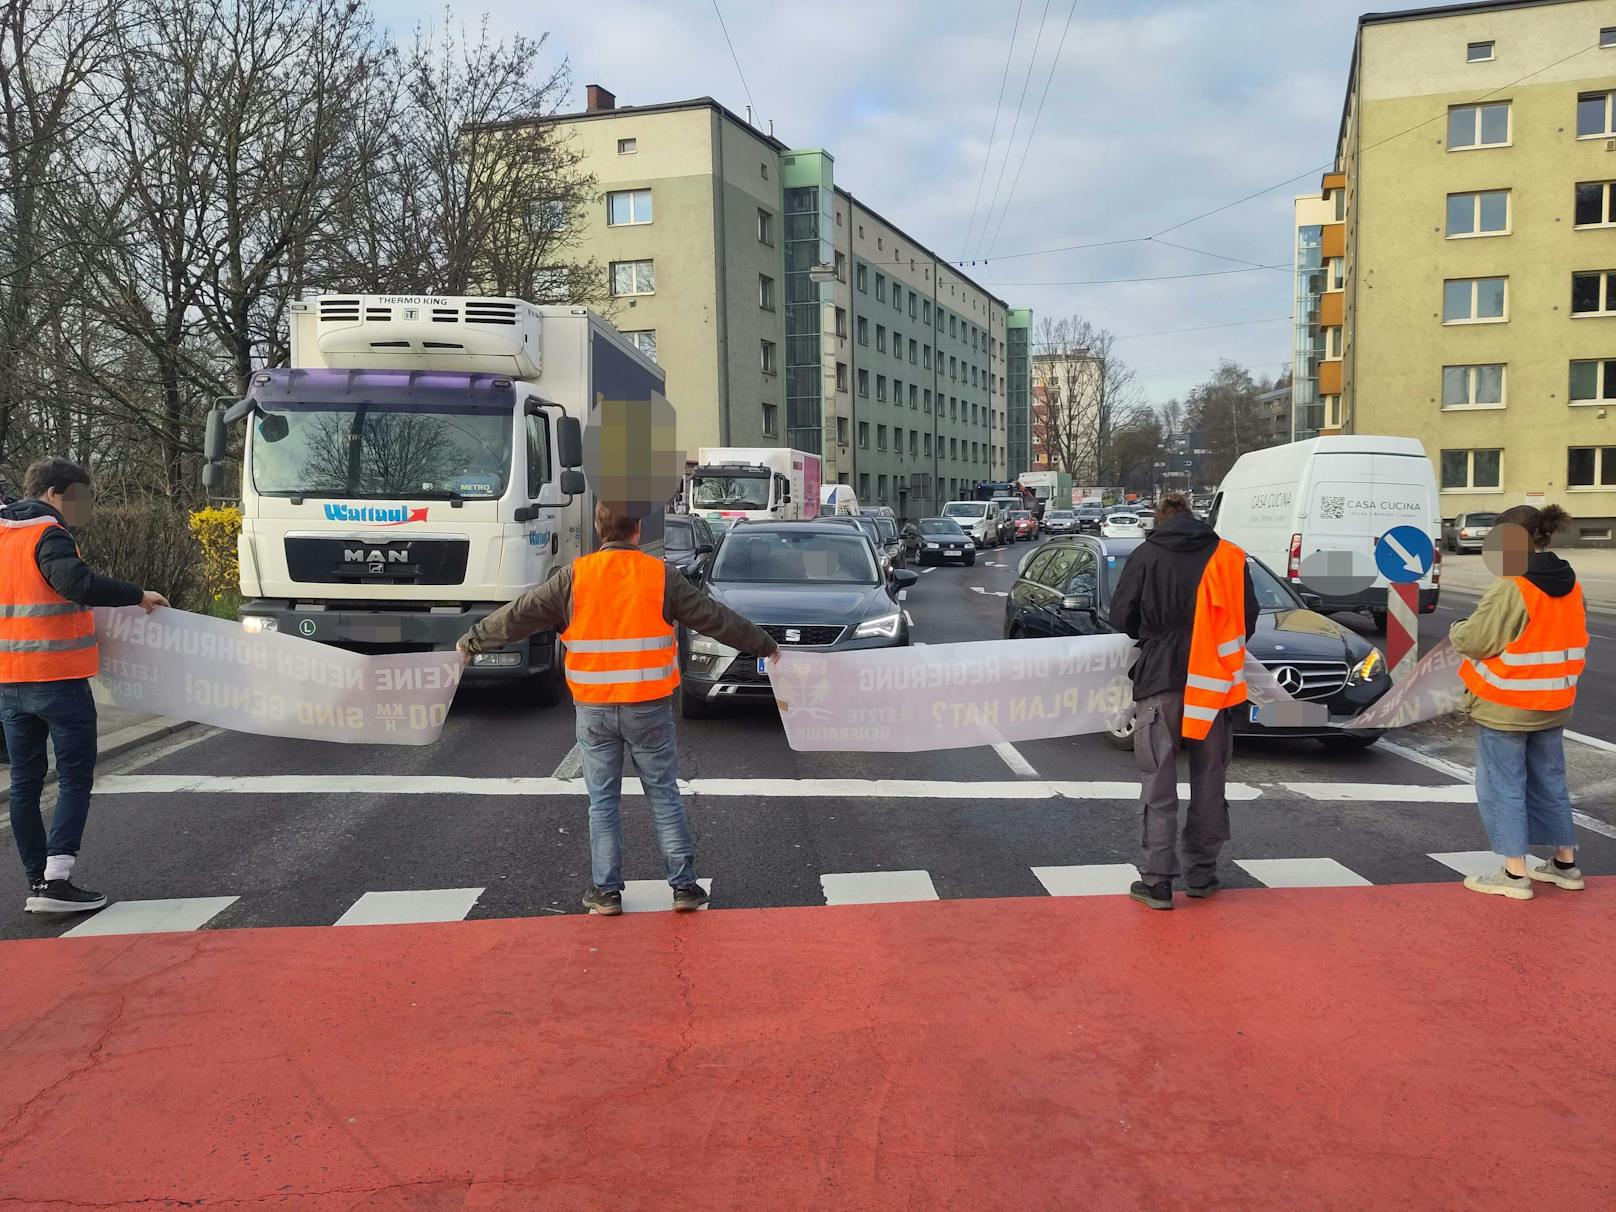 In Linz blockierten Aktivisten am Dienstag in der Früh wieder den Verkehr. Ein Feuerwehrauto wurde dadurch behindert.